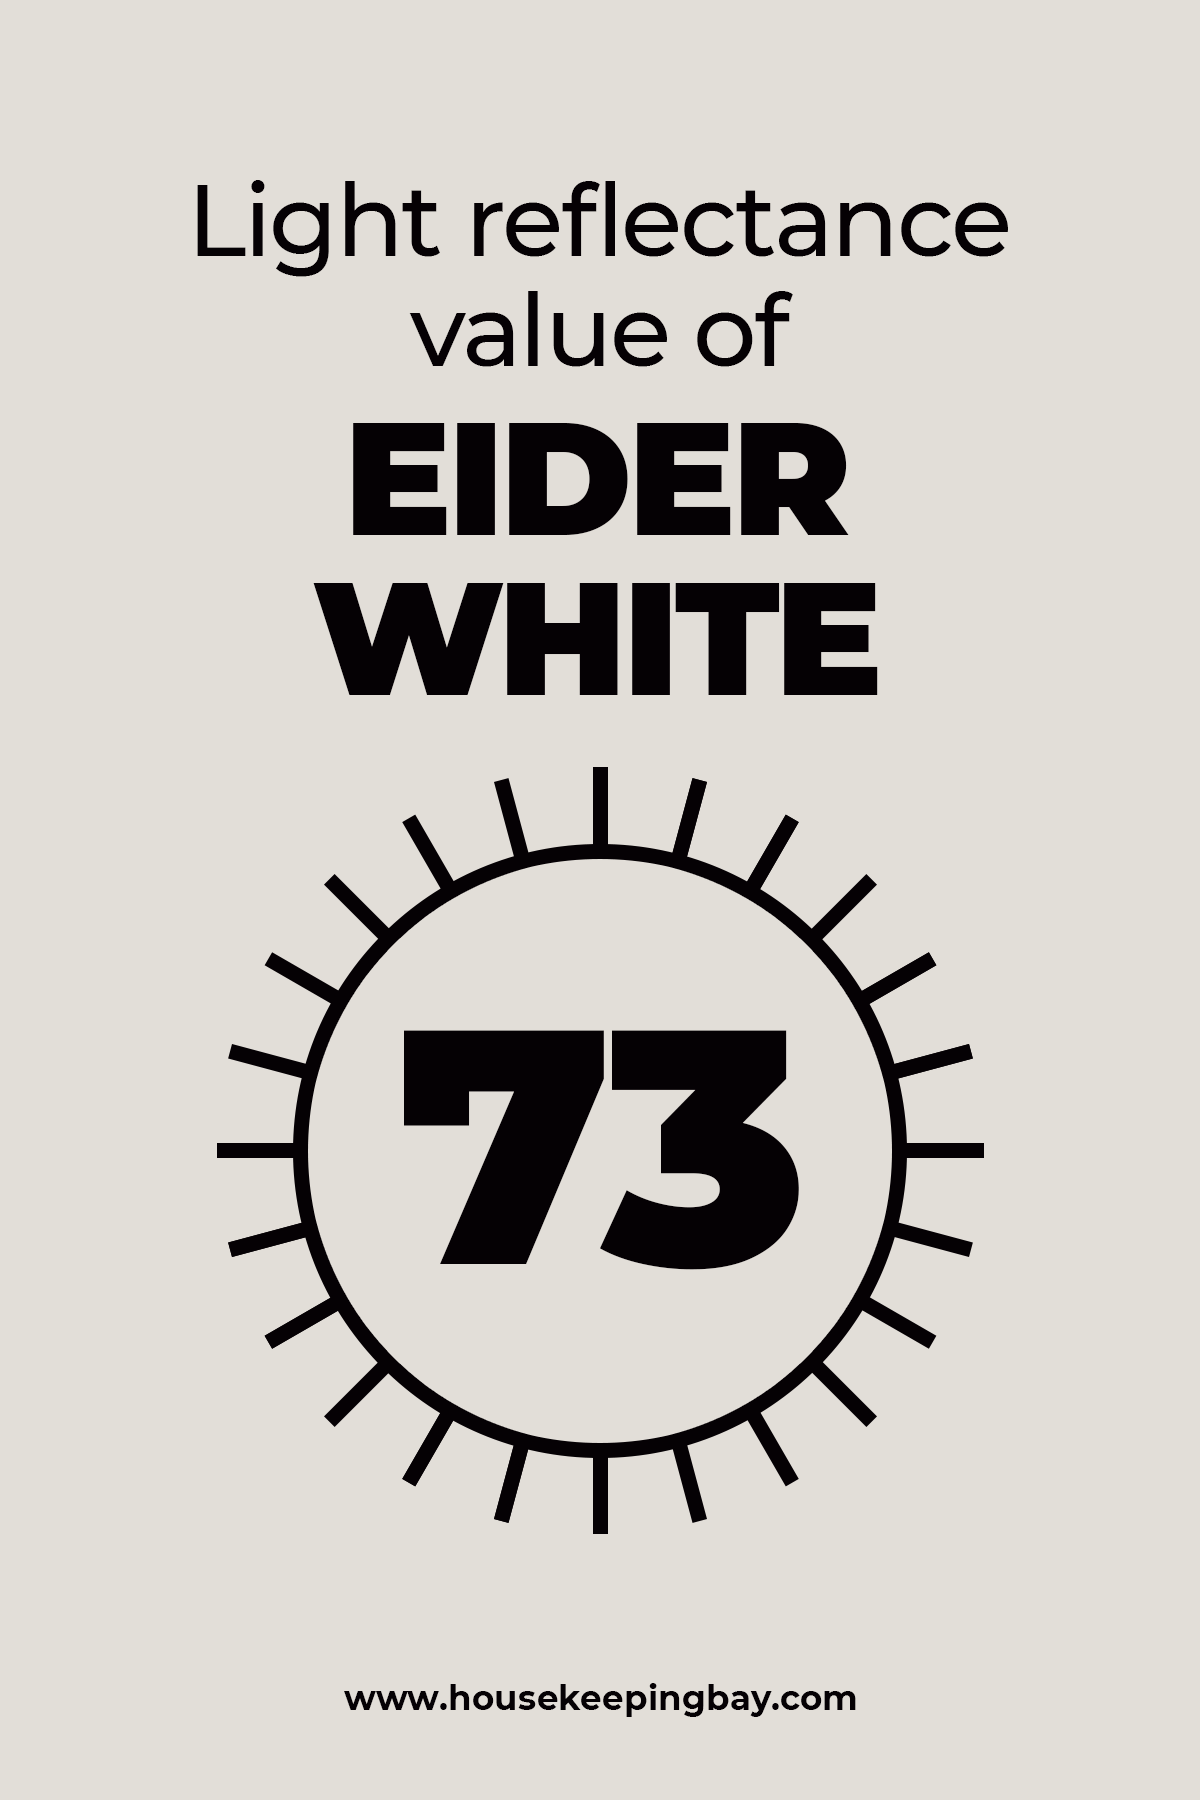 light reflectance value of Eider White – 73